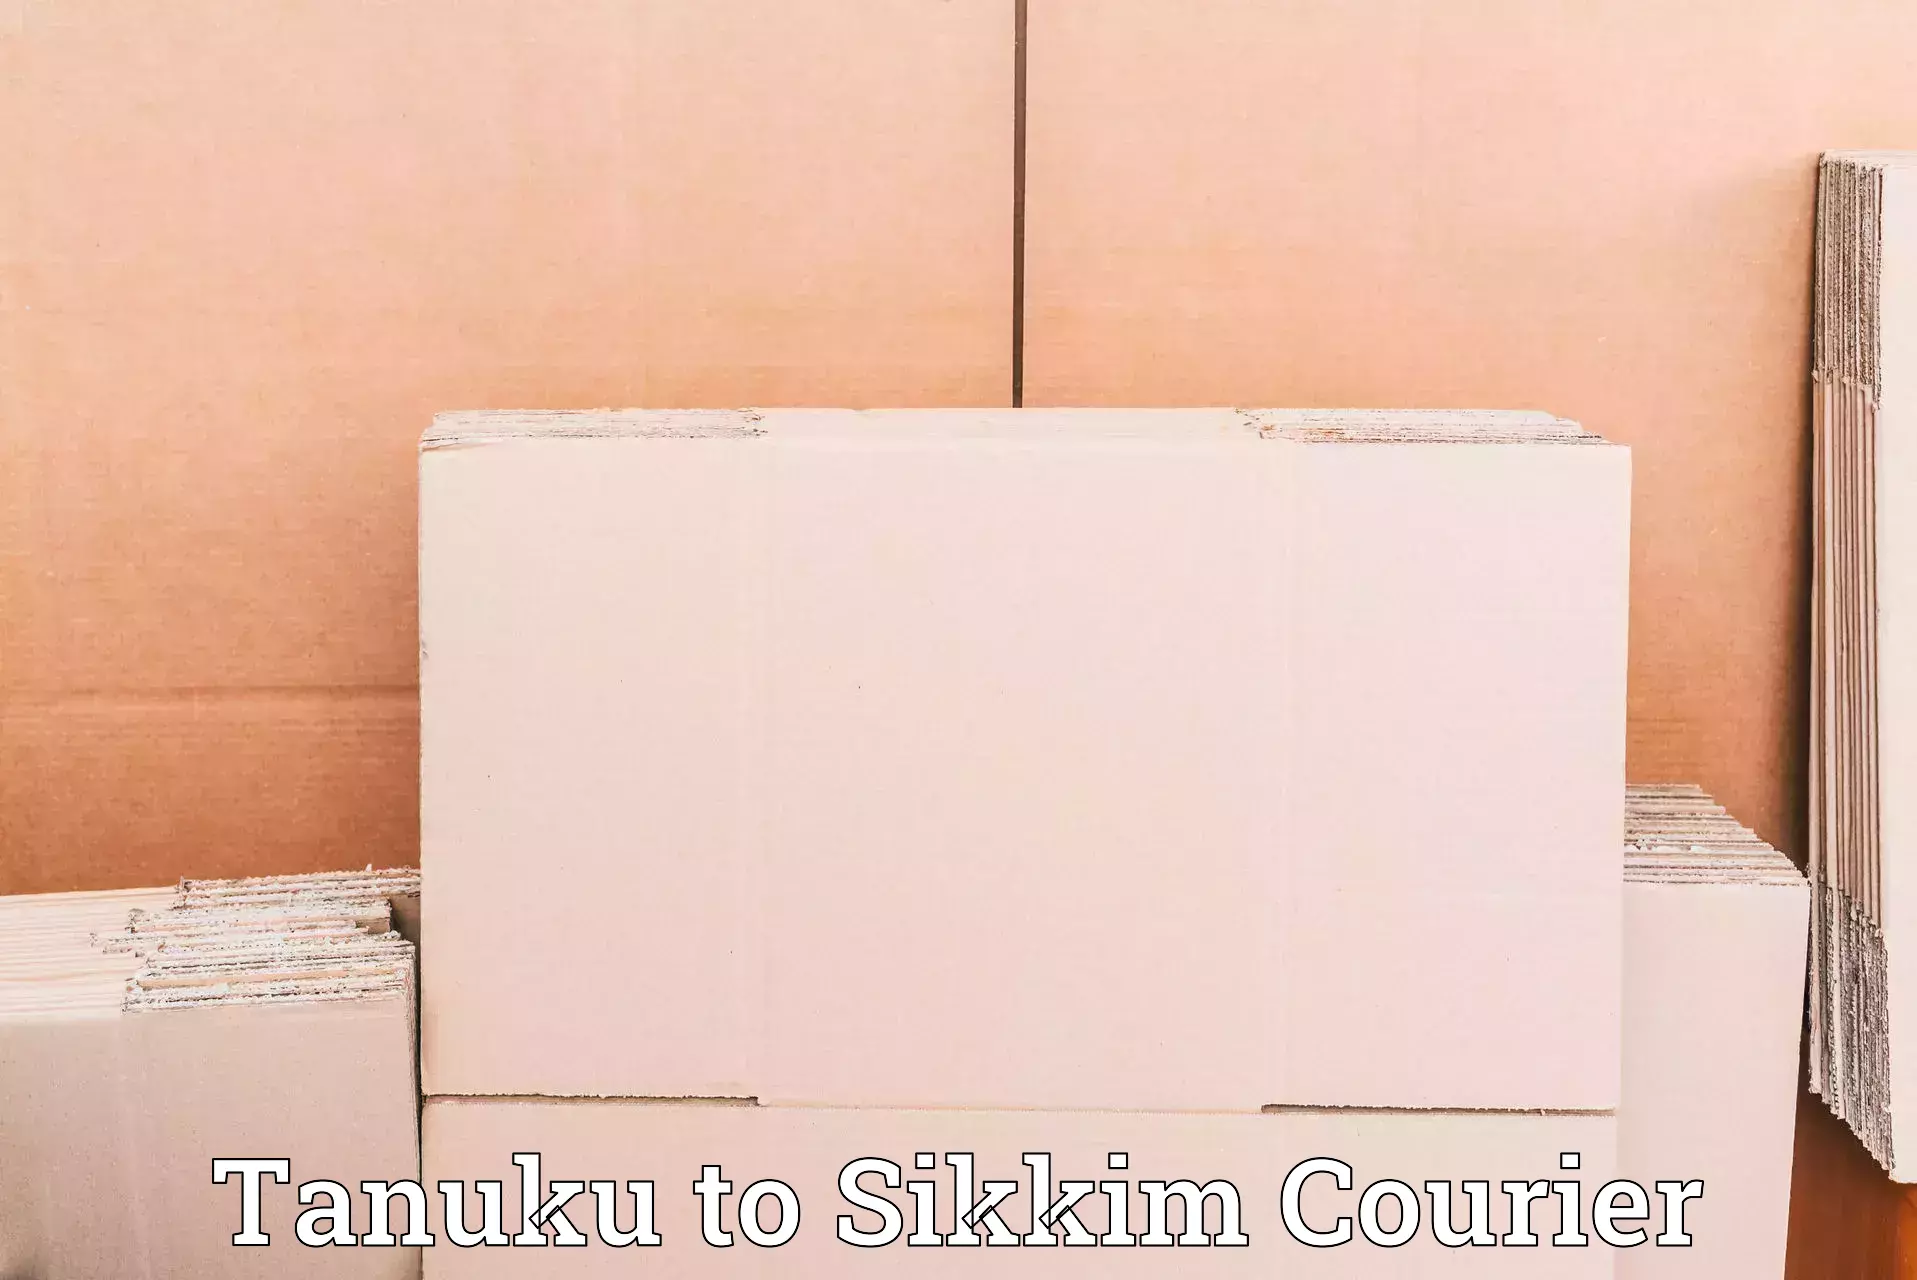 High-speed parcel service Tanuku to Singtam